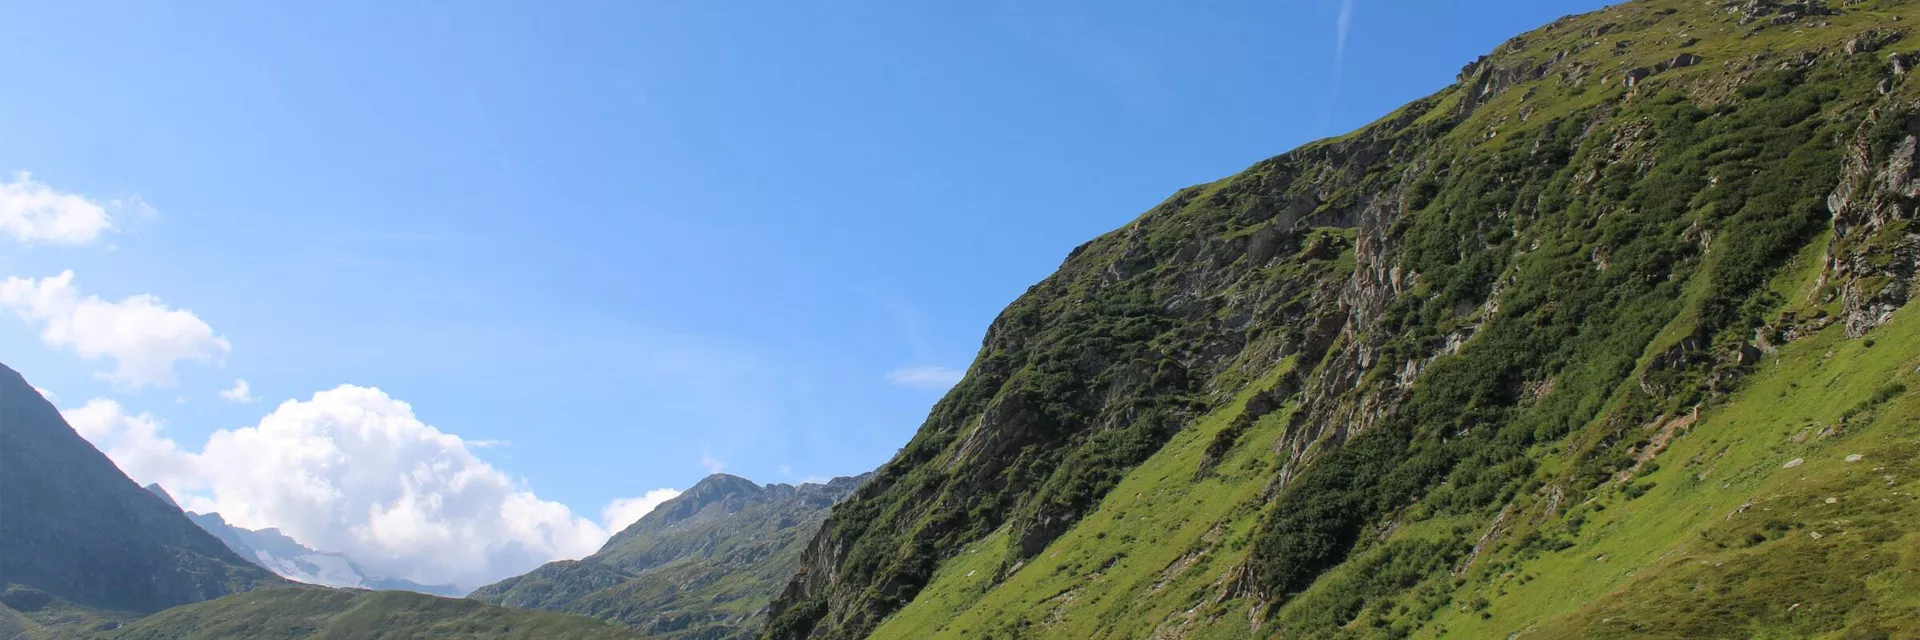 Location de vacances à Auris-en-Oisans dans les Alpes du nord